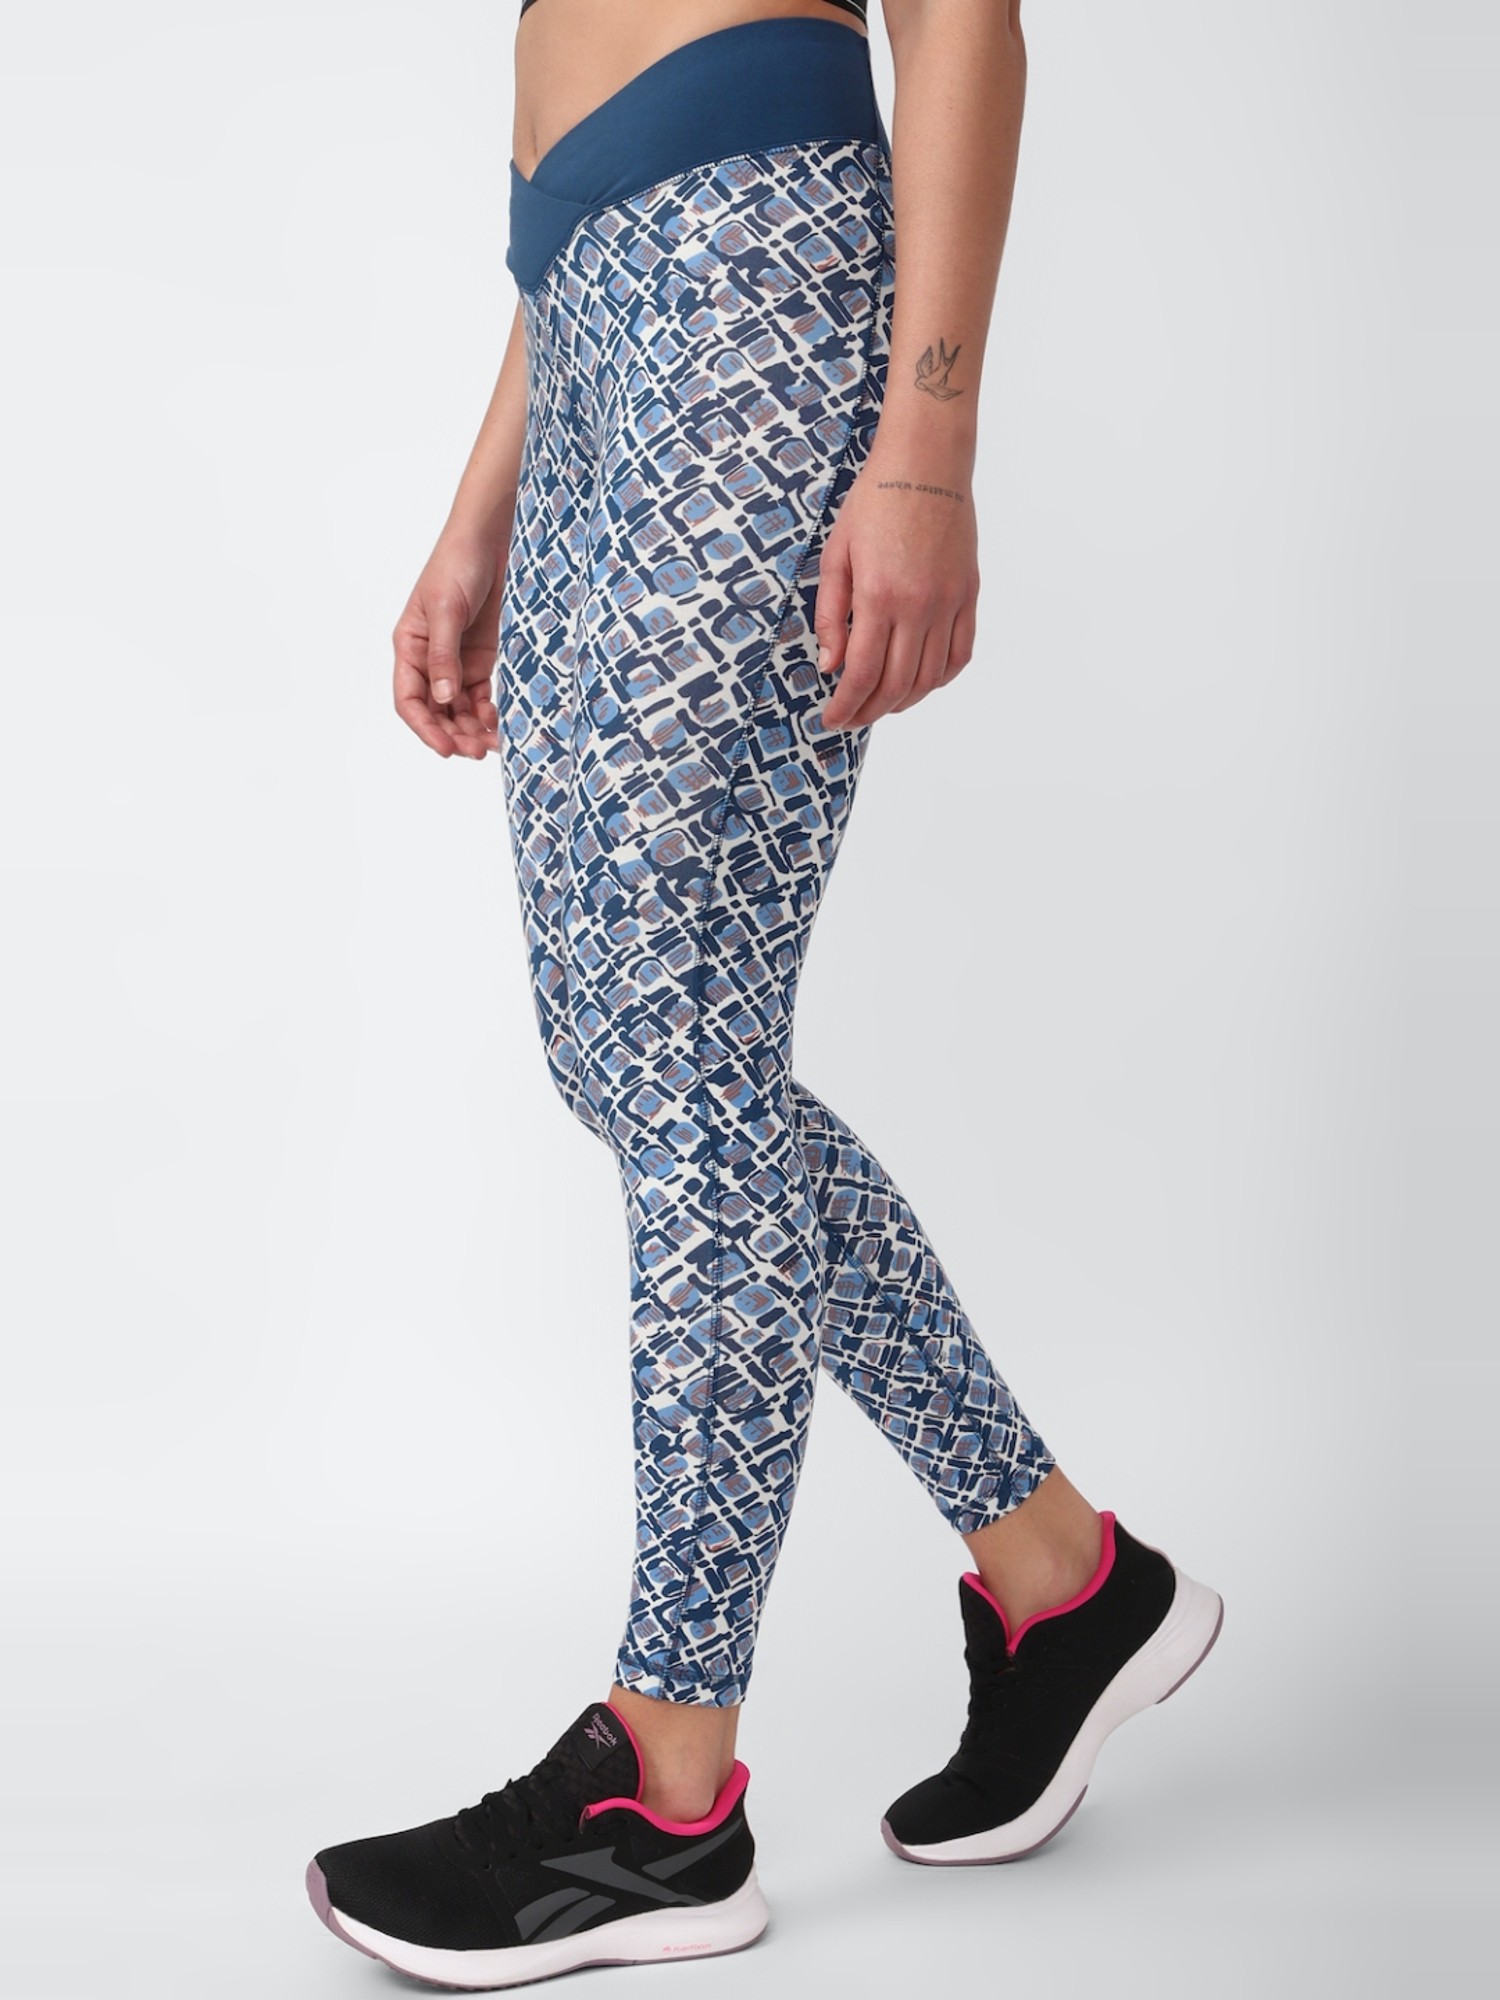 Blue Bloom Floral Leggings | Women's Active Wear Yoga Pants